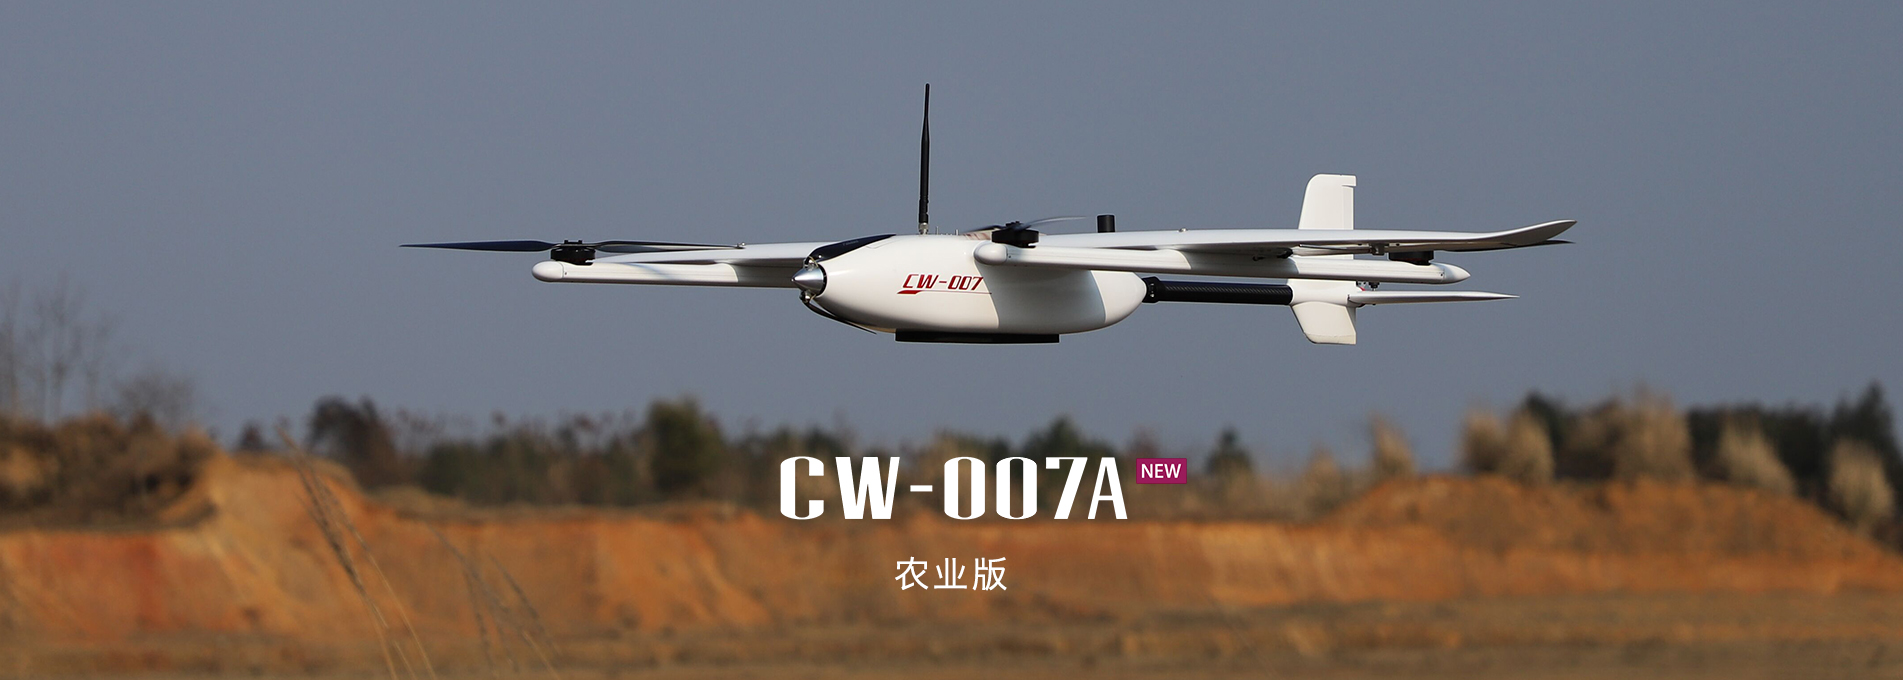 大鹏CW-007A农业版垂直起降固定翼无人机